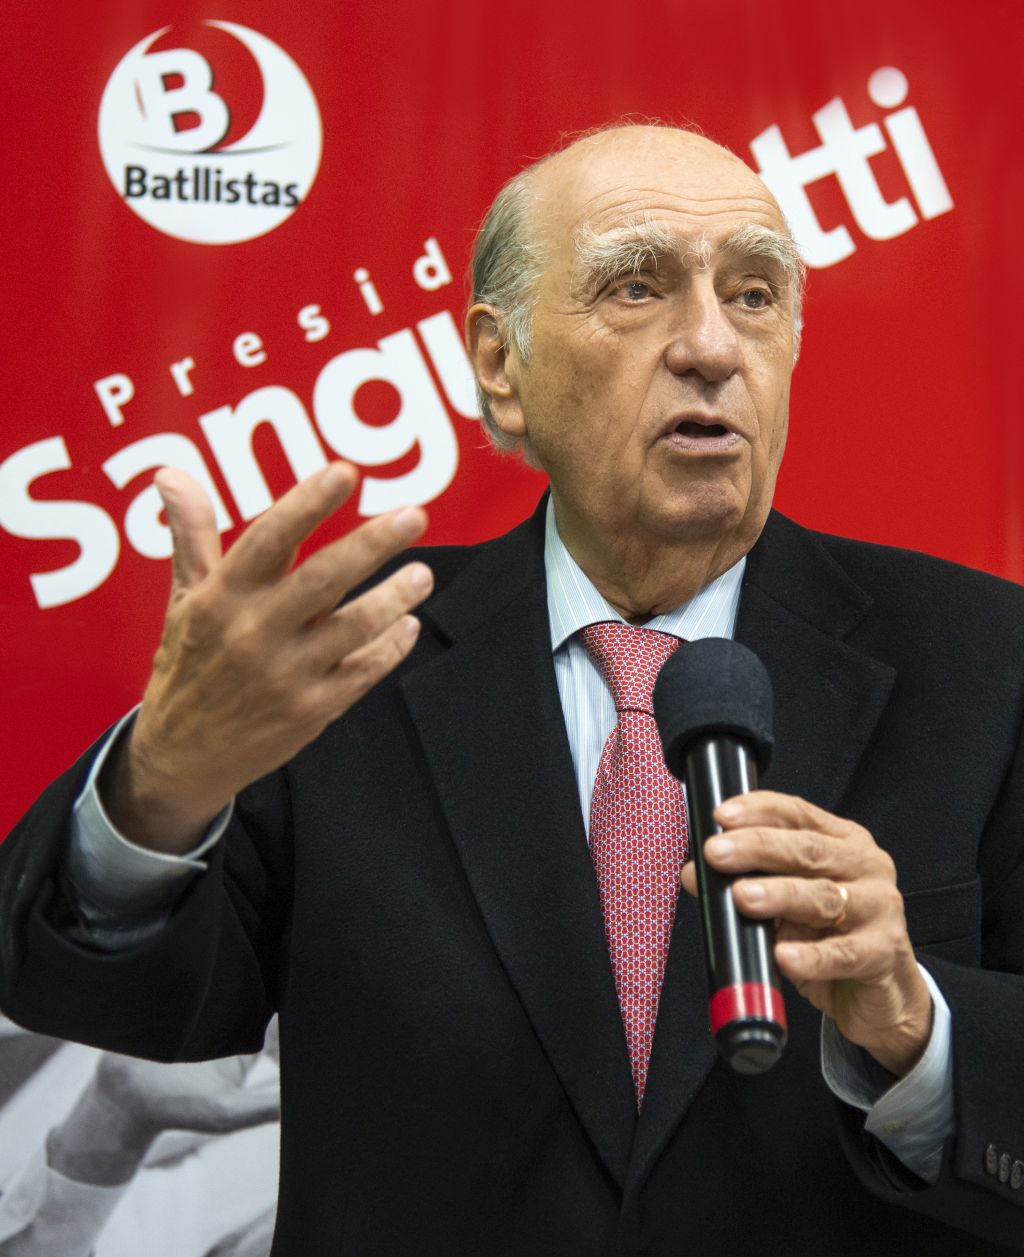 Sanguinetti en campaña. (Foto: Comunicación Batllistas)